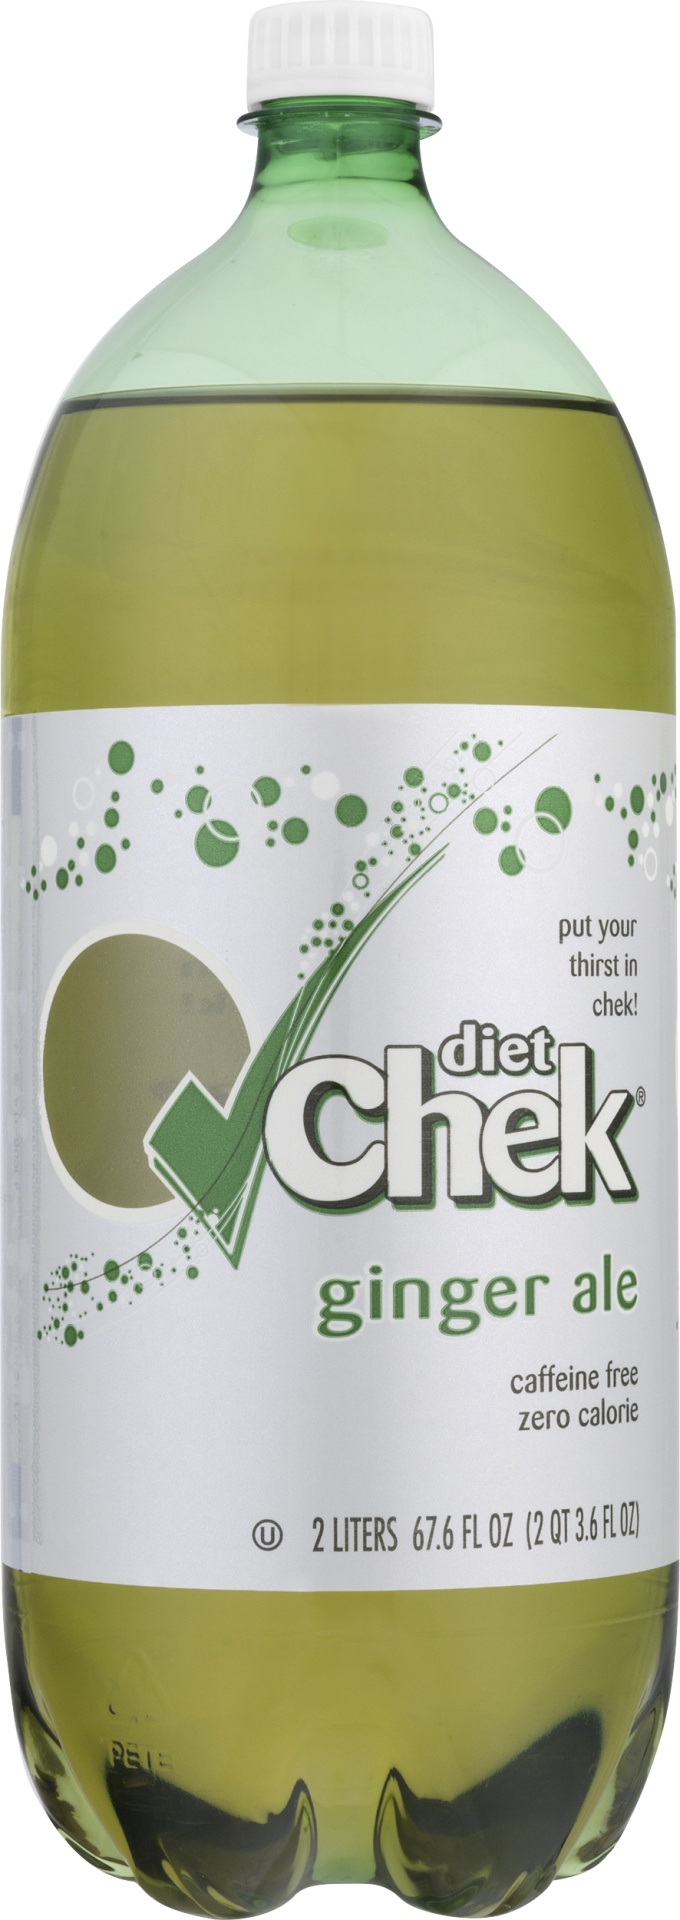 slide 1 of 1, Chek Diet Gingerale, 2 liter